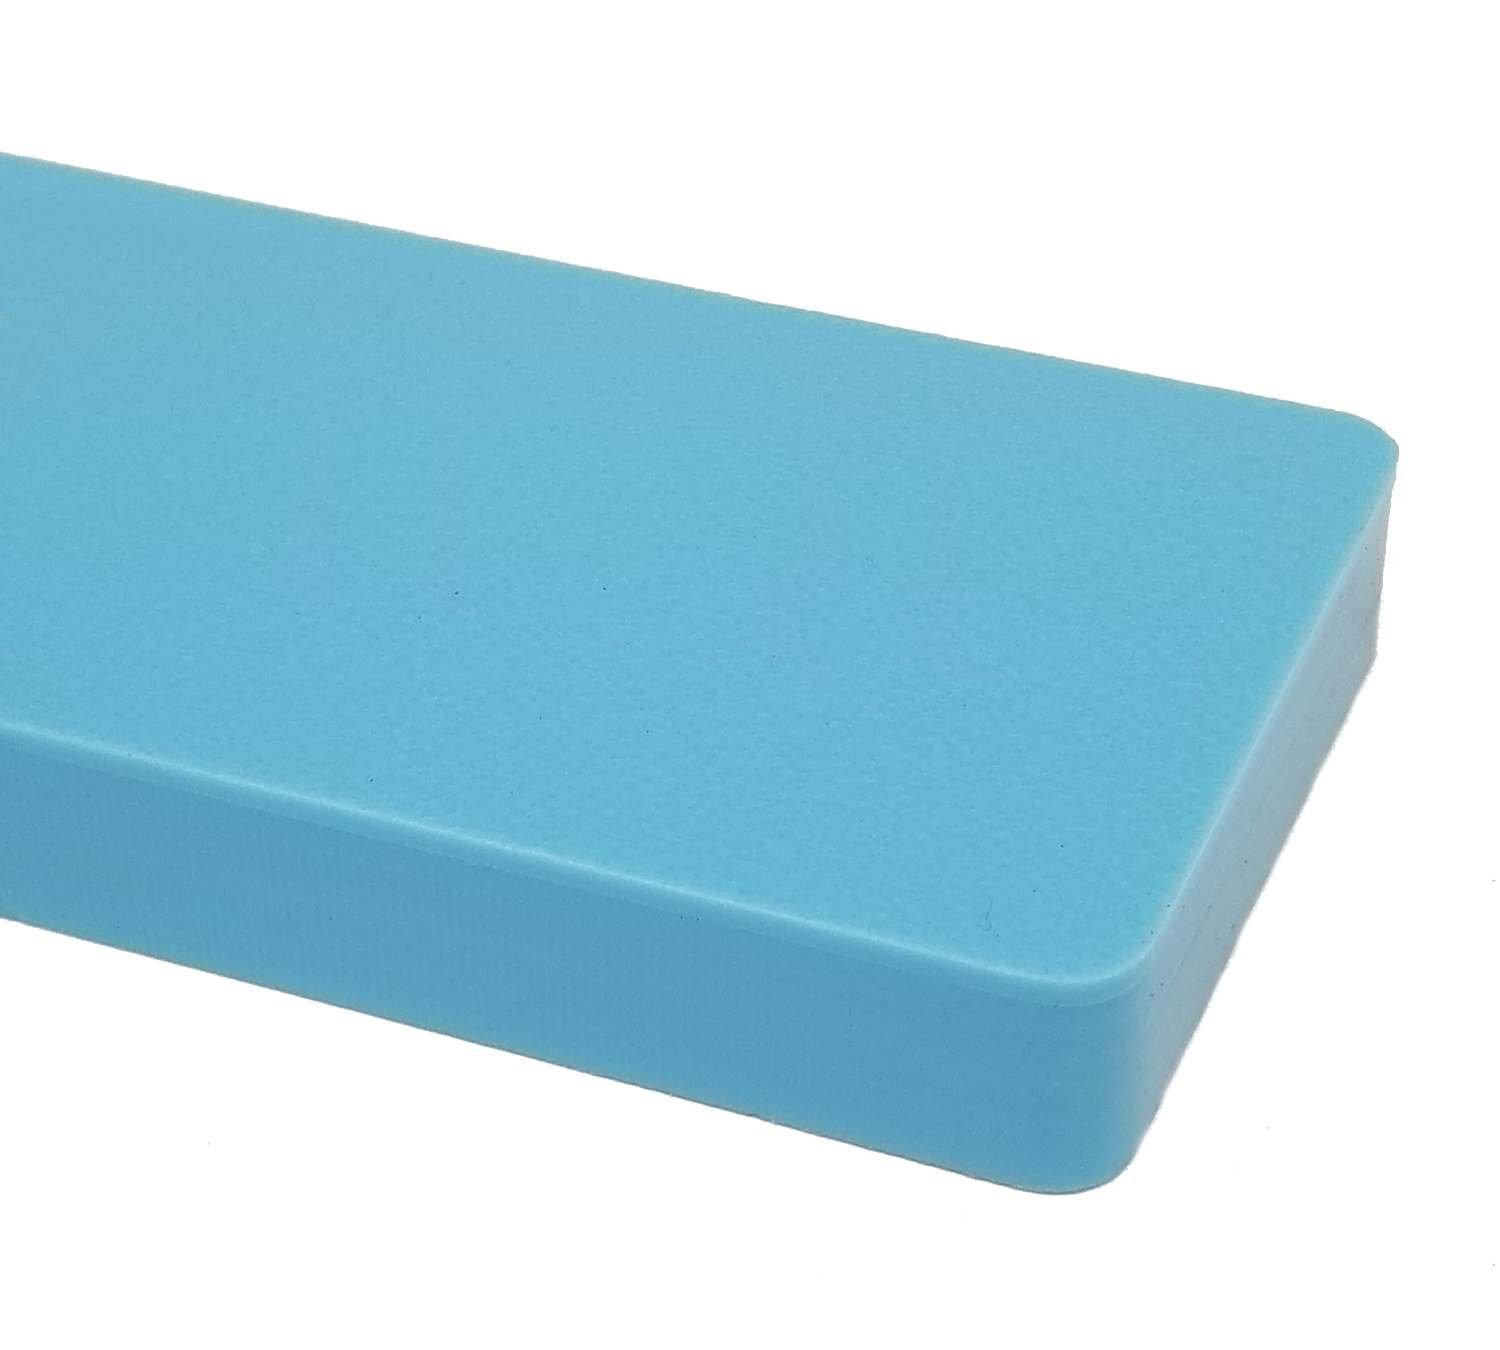 HDPE Colored Cutting Board | Blue